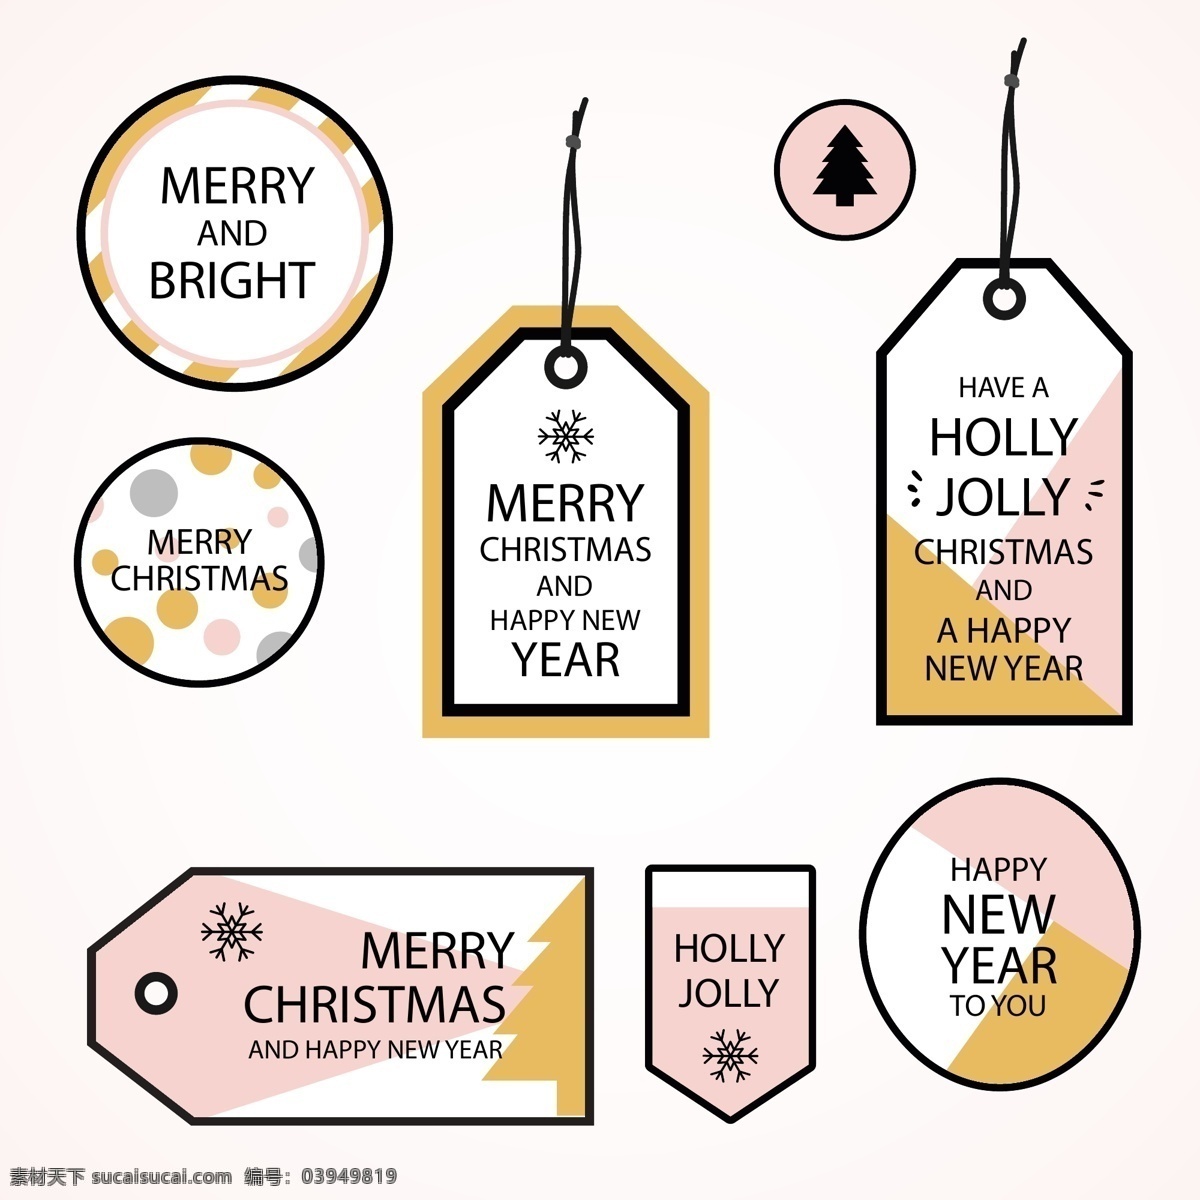 清新 英文 圣诞 标签 雪花 圣诞节 矢量素材 圣诞树 ai素材